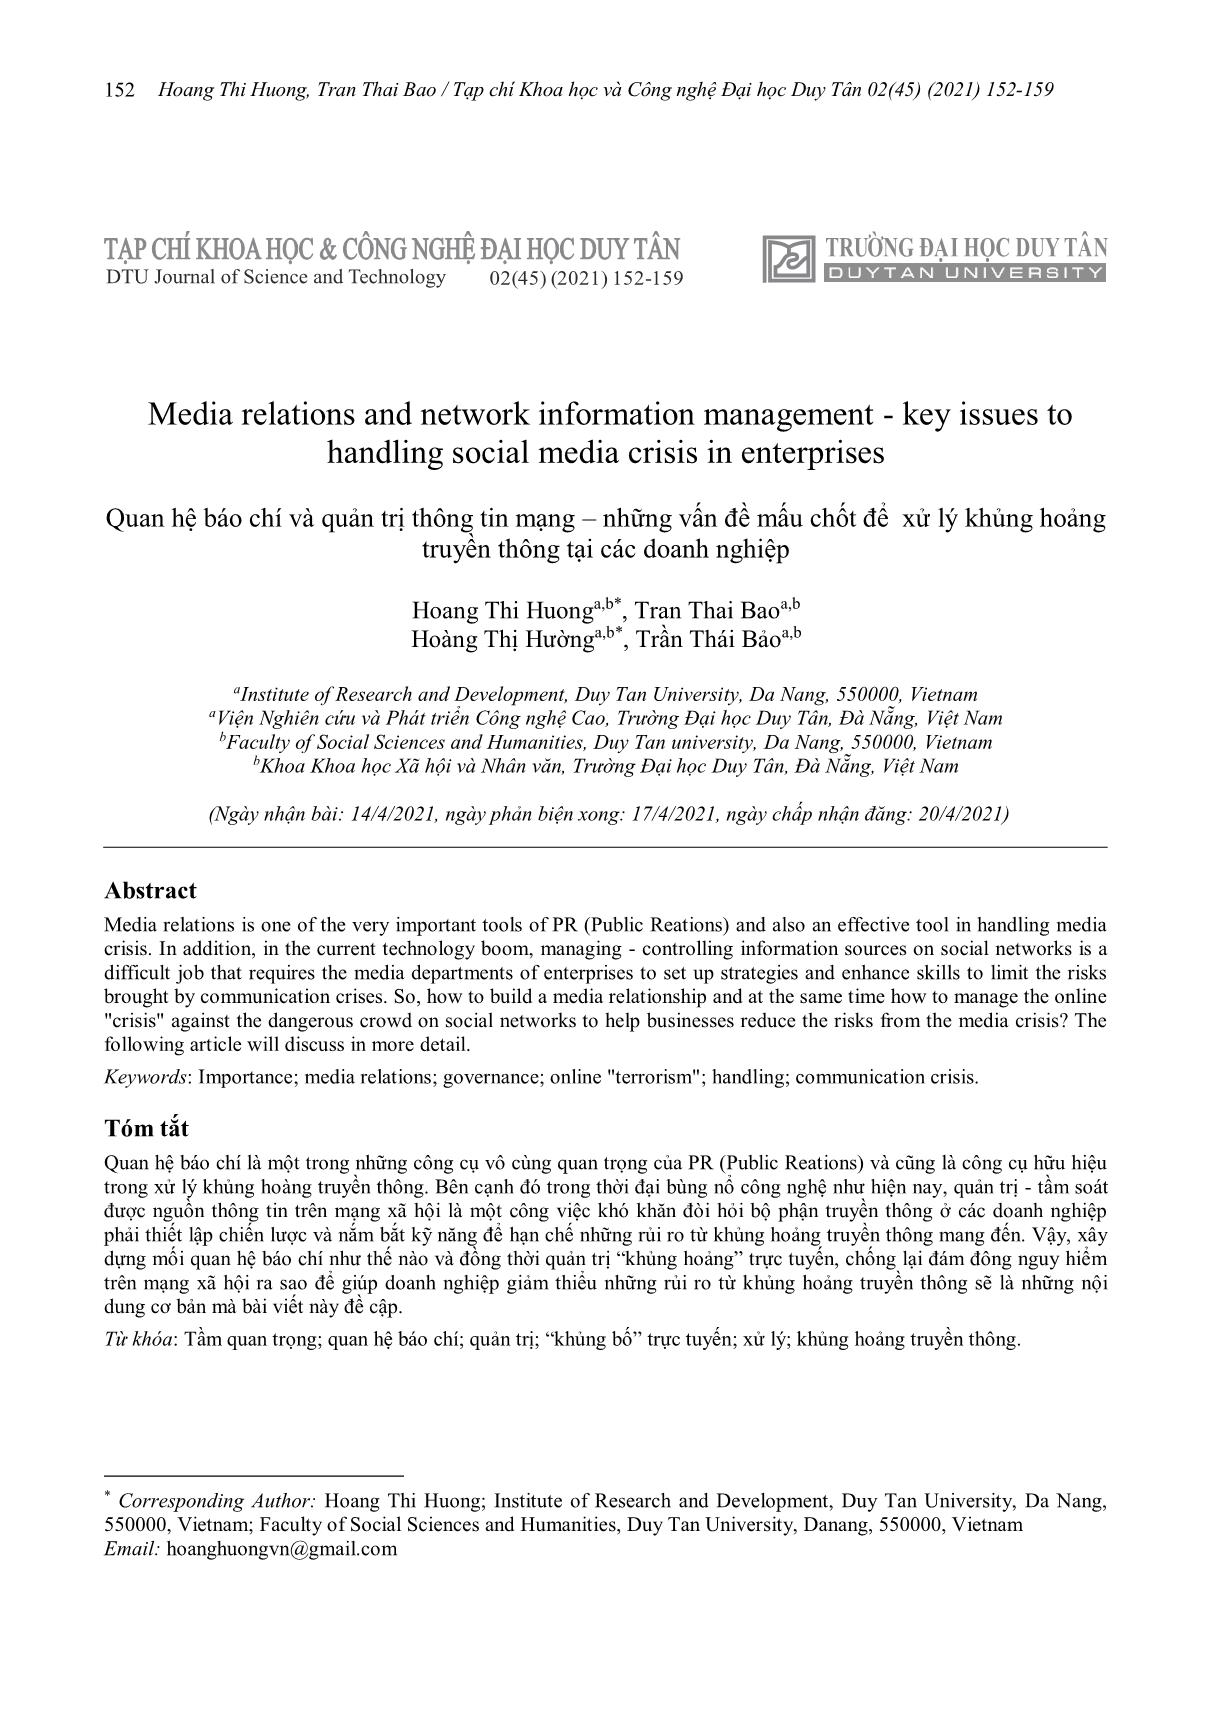 Quan hệ báo chí và quản trị thông tin mạng – những vấn đề mấu chốt để xử lý khủng hoảng truyền thông tại các doanh nghiệp trang 1